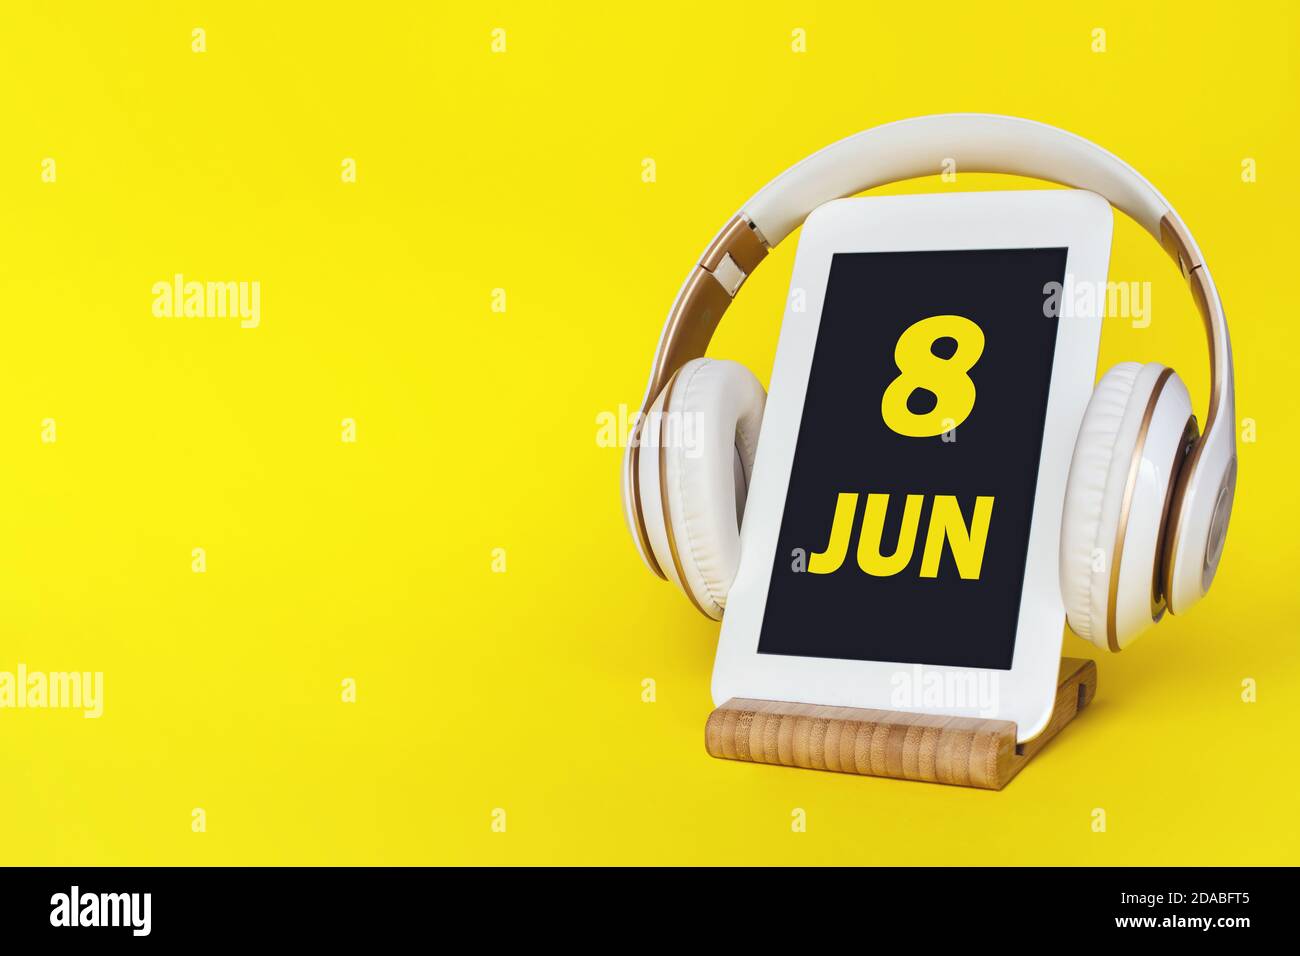 Juni. Tag 8 des Monats, Kalenderdatum. Elegante Kopfhörer und modernes Tablet auf gelbem Hintergrund. Leerzeichen für Text. Bildung, Technologie, Lifestyle. Stockfoto